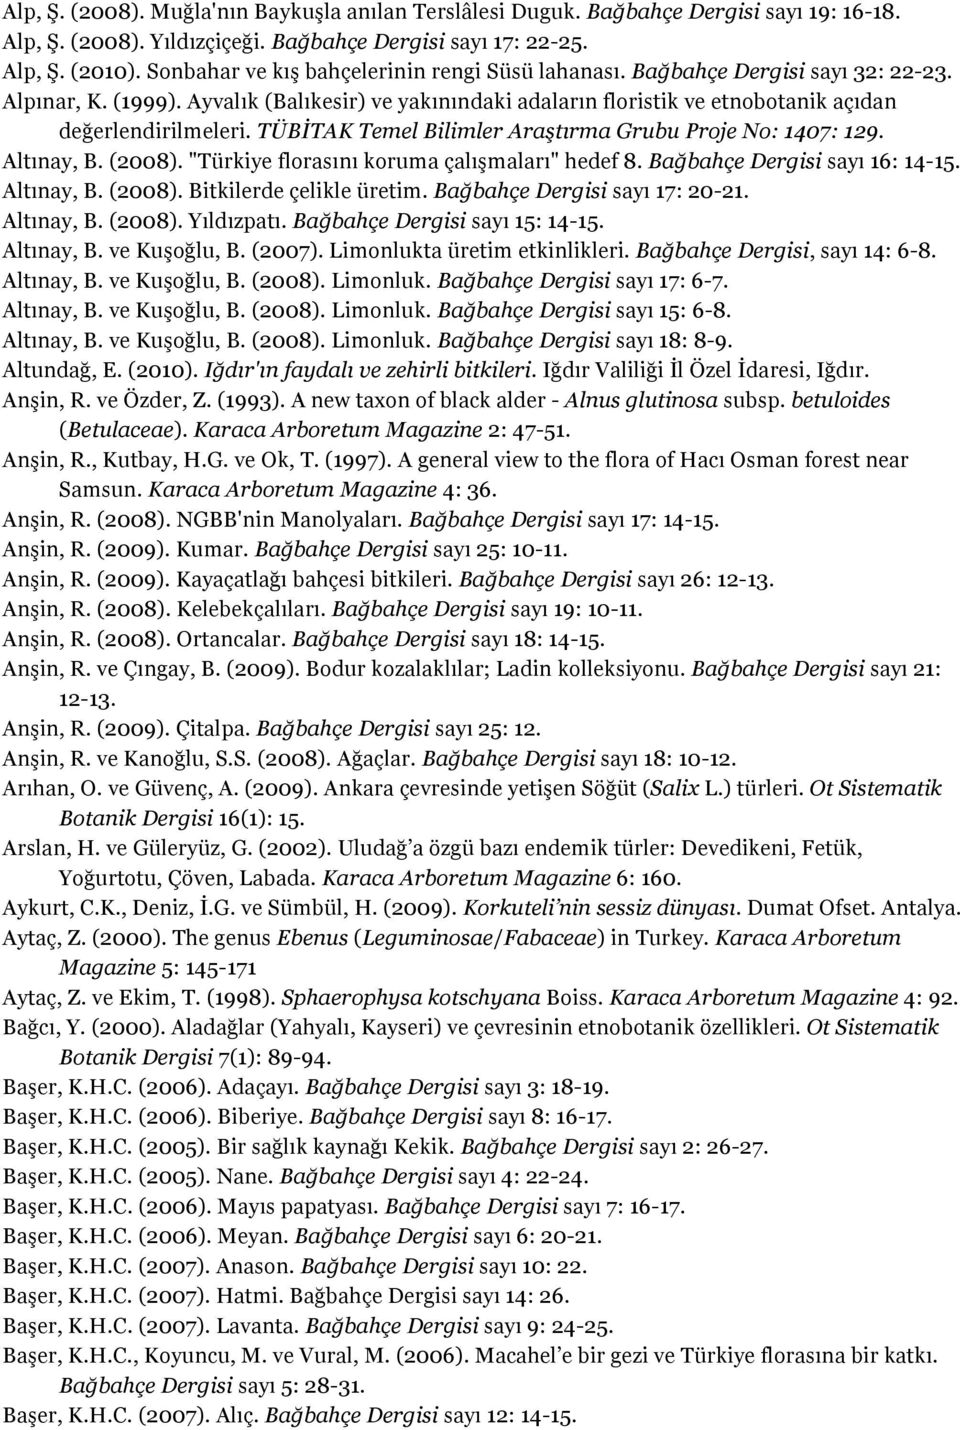 TÜBİTAK Temel Bilimler Araştırma Grubu Proje No: 1407: 129. Altınay, B. (2008). "Türkiye florasını koruma çalışmaları" hedef 8. Bağbahçe Dergisi sayı 16: 14-15. Altınay, B. (2008). Bitkilerde çelikle üretim.